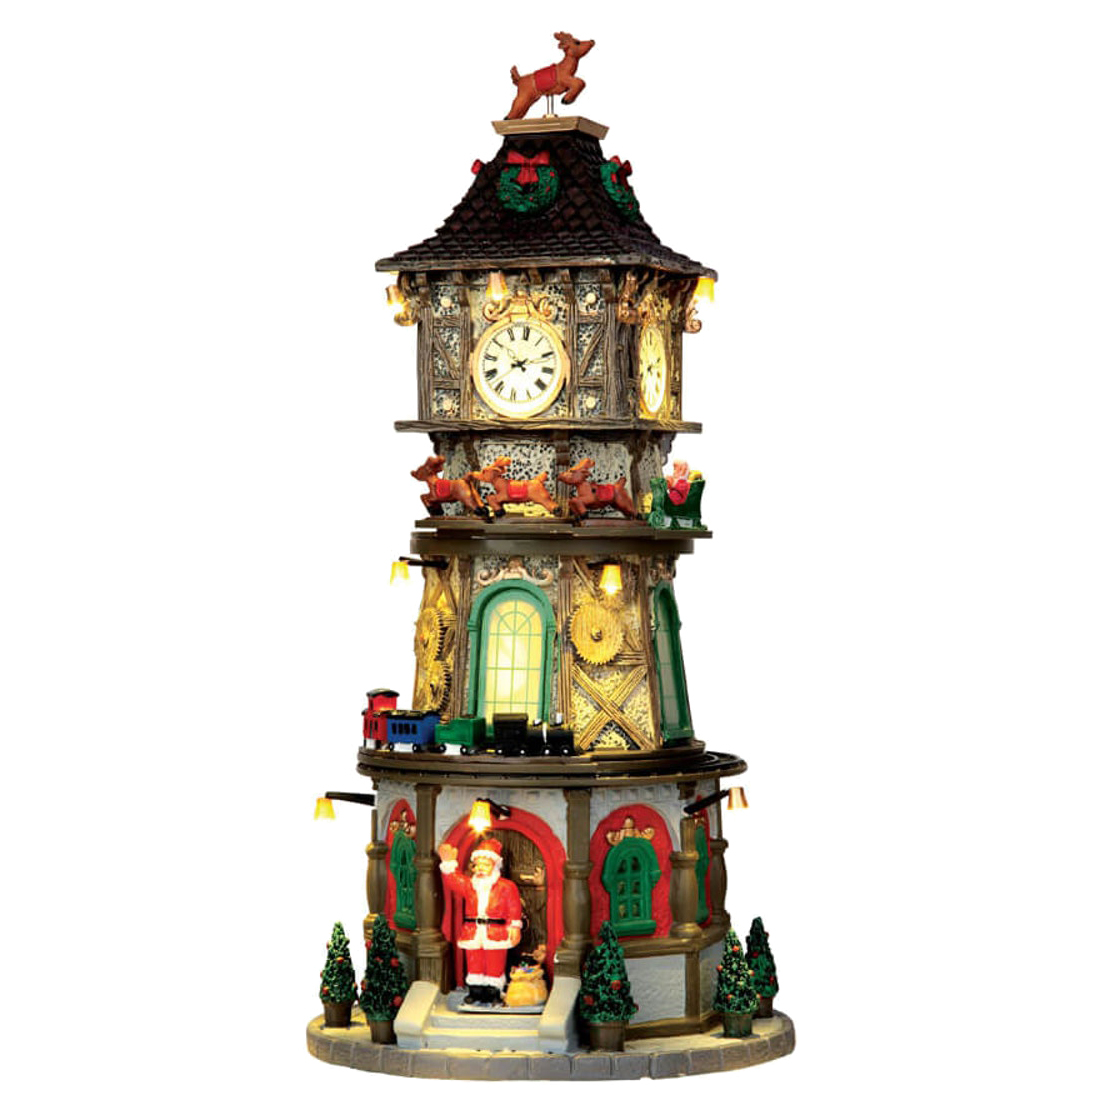 Новогодняя миниатюра Lemax Рождественская часовая башня 45735-lemax 15,5x32,5x15,5 см